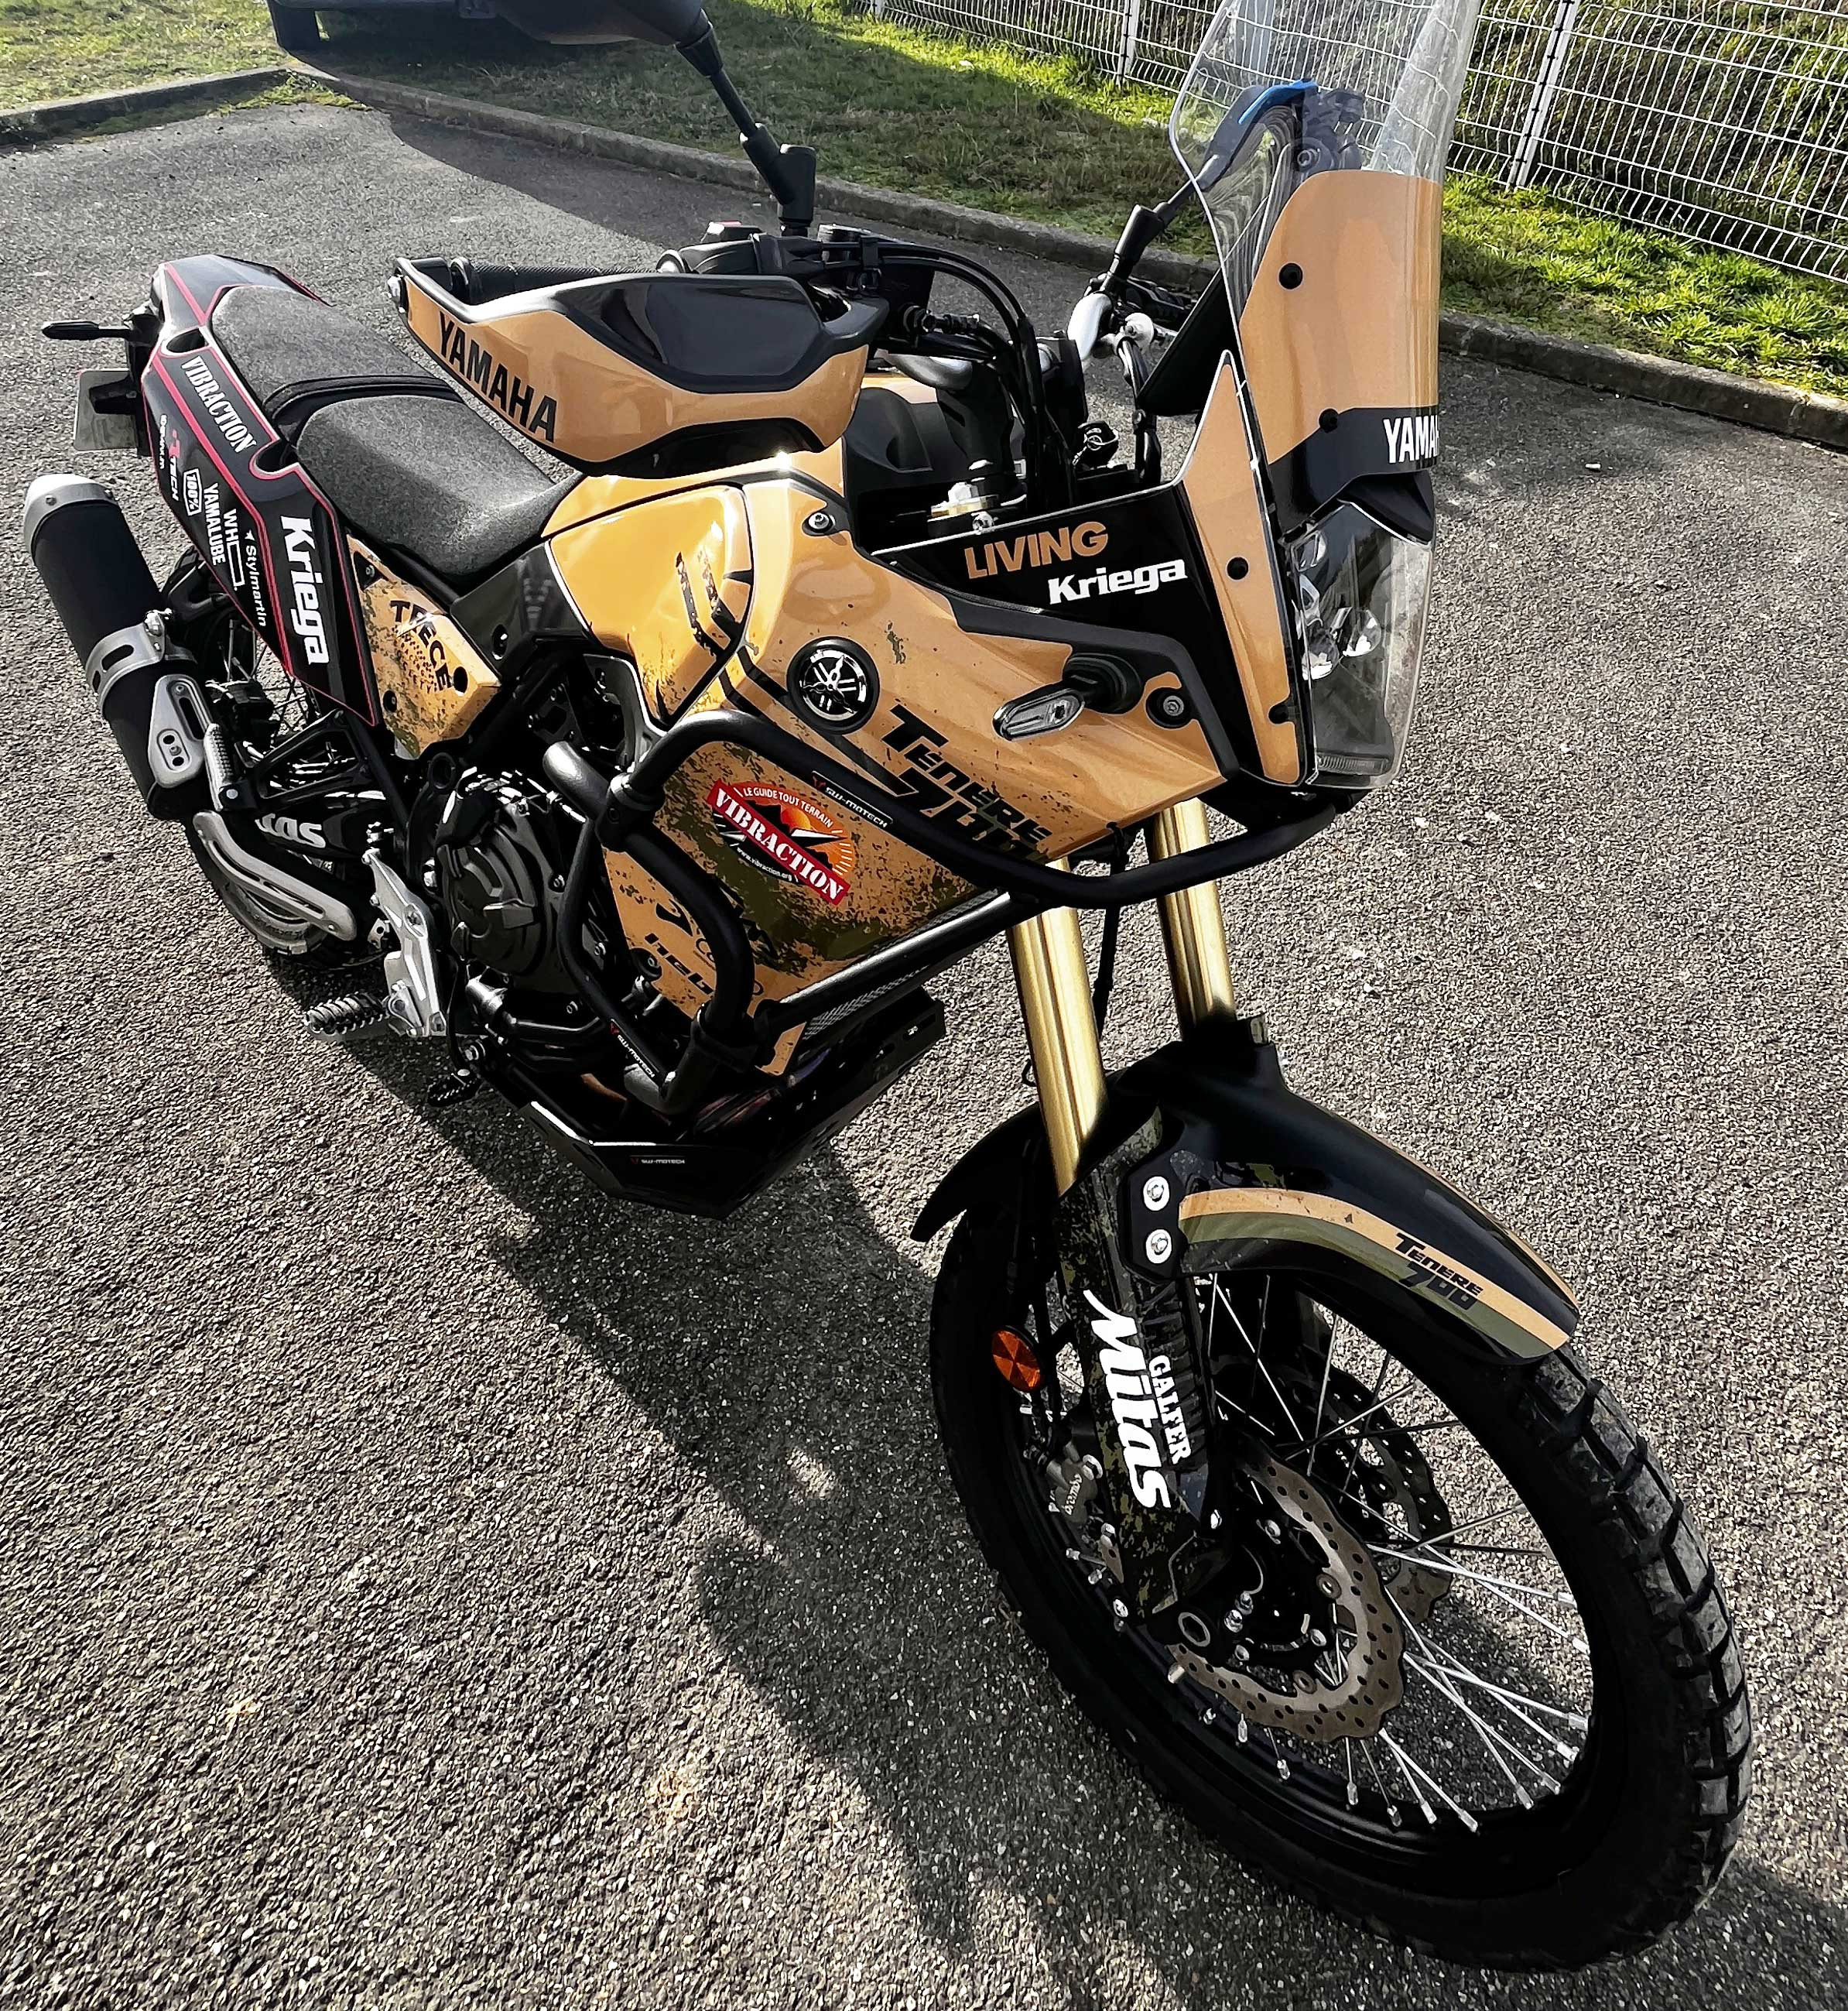 nouveau kit décoration et sticker pour la moto Yamaha 700 ténéré